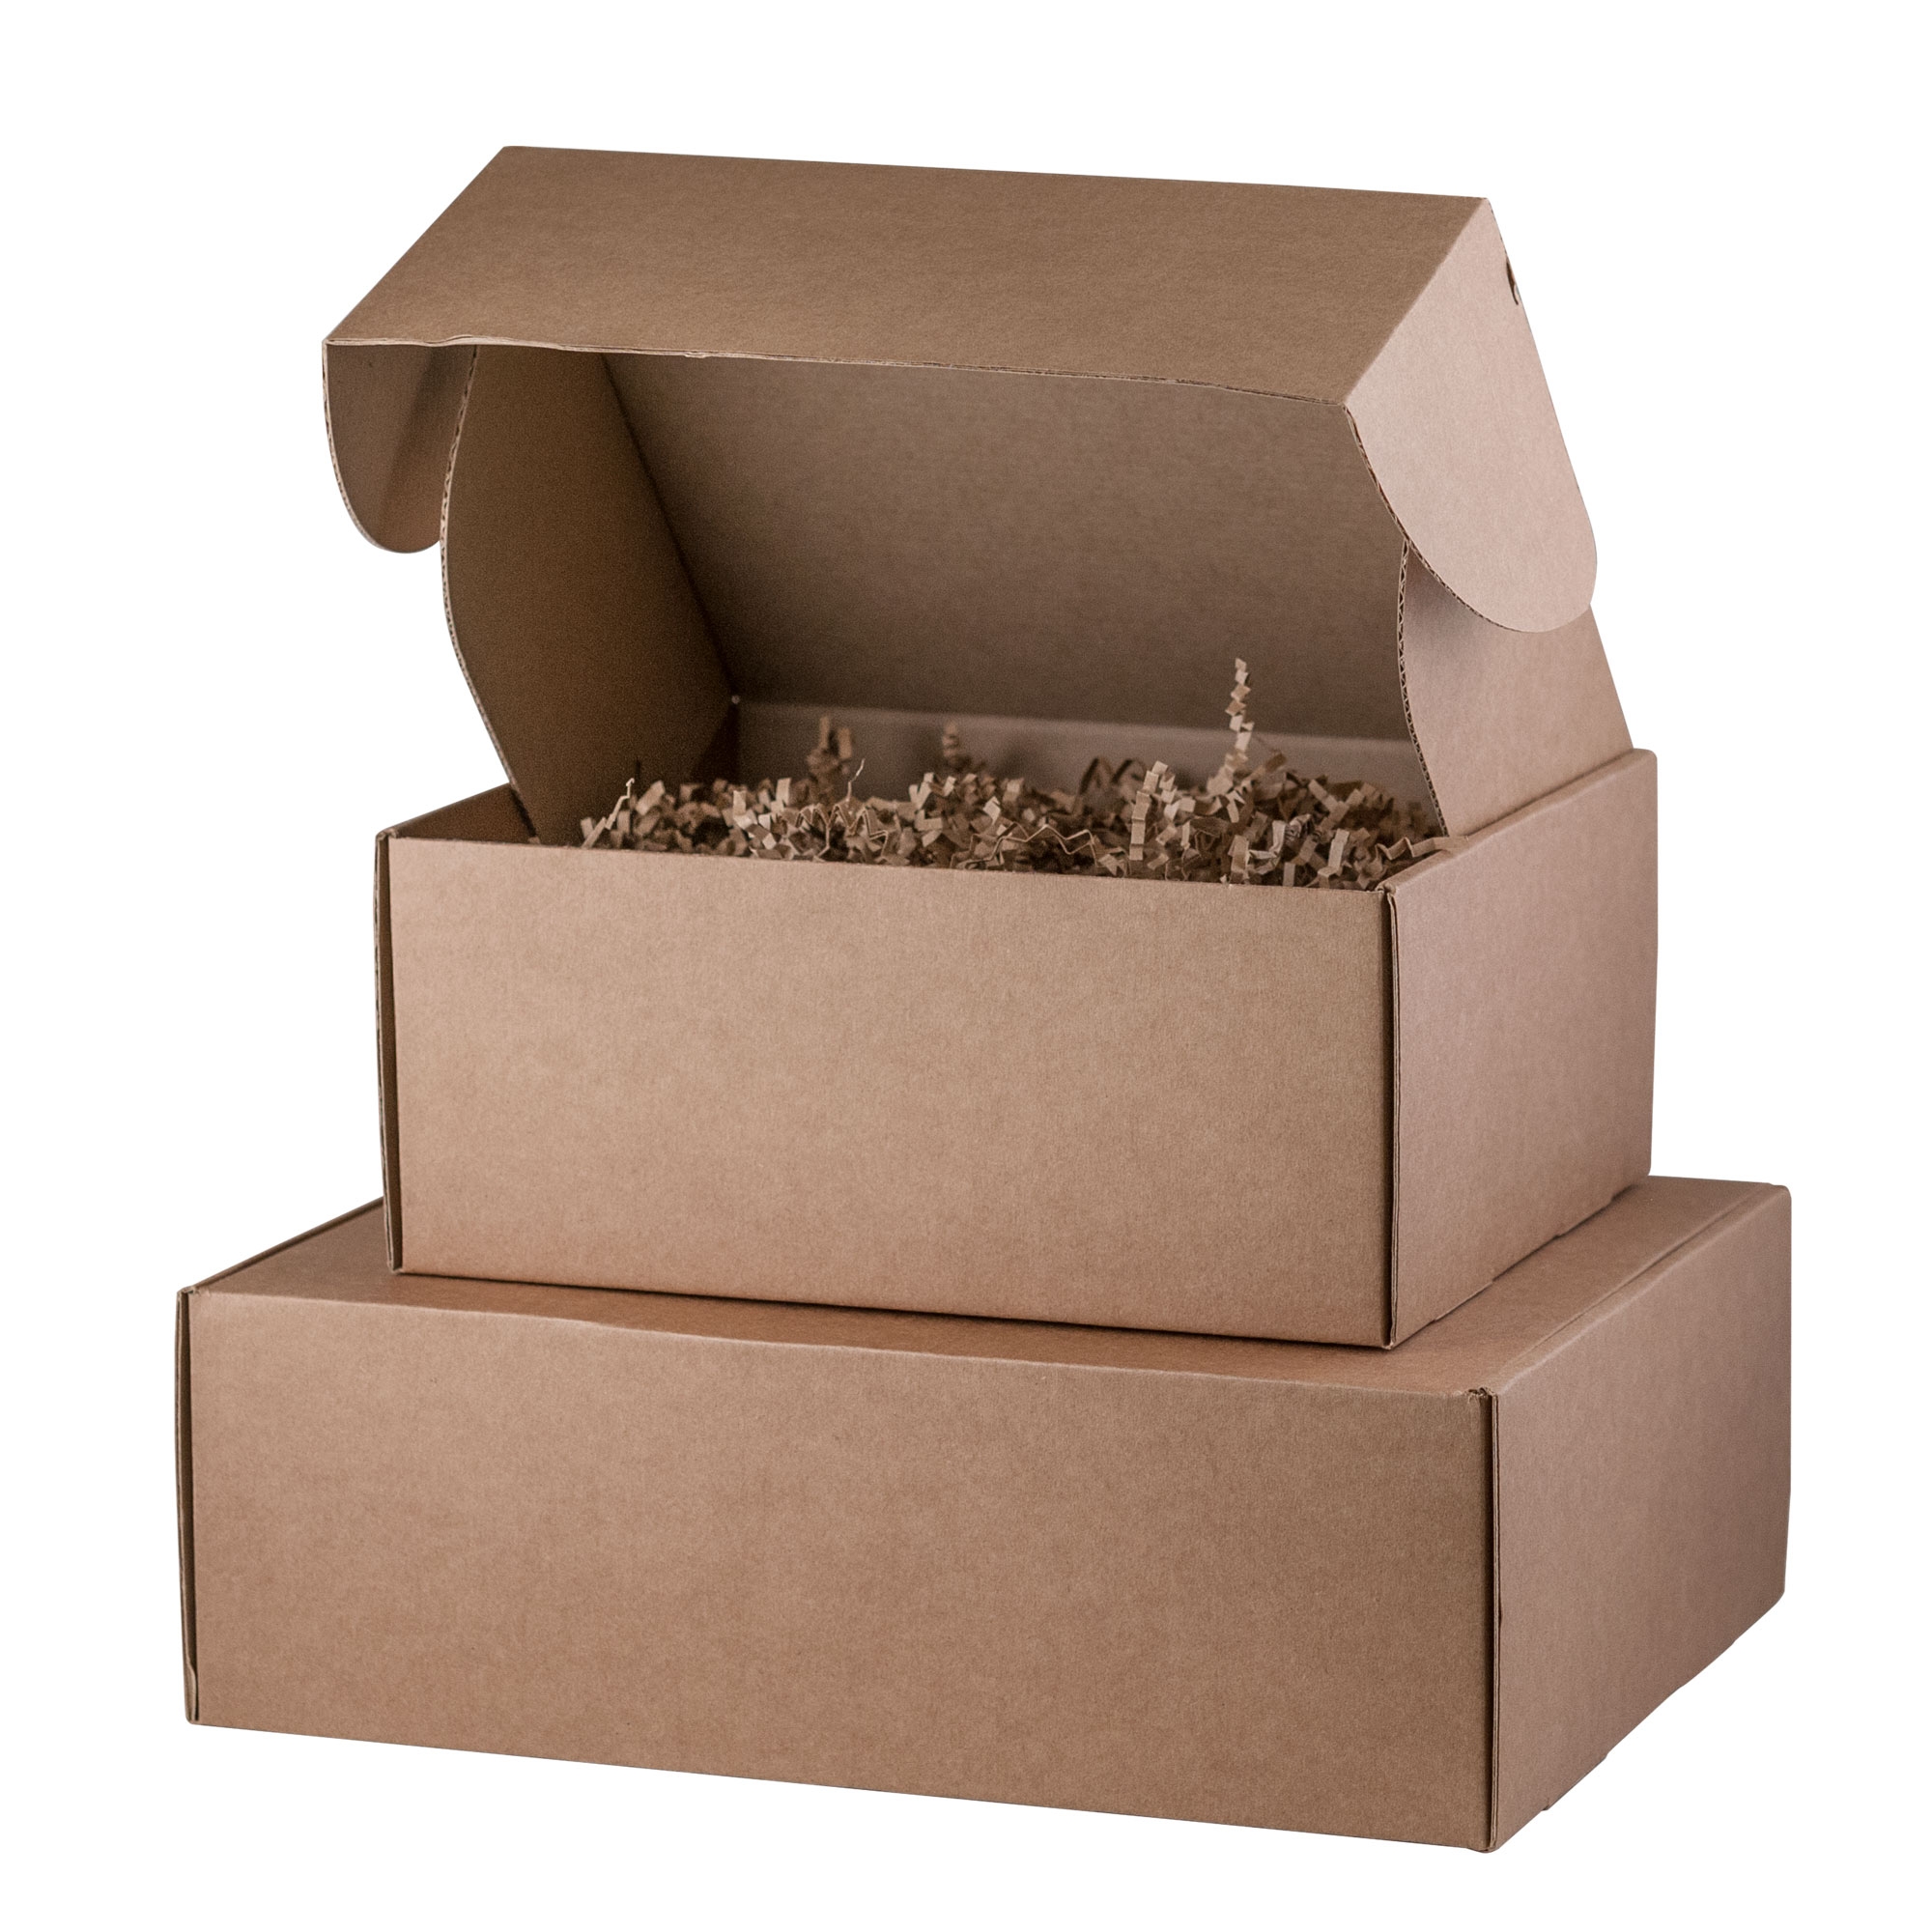 Бумажный наполнитель для подарочной упаковки, крафт (50 гр./упак.), коричневый